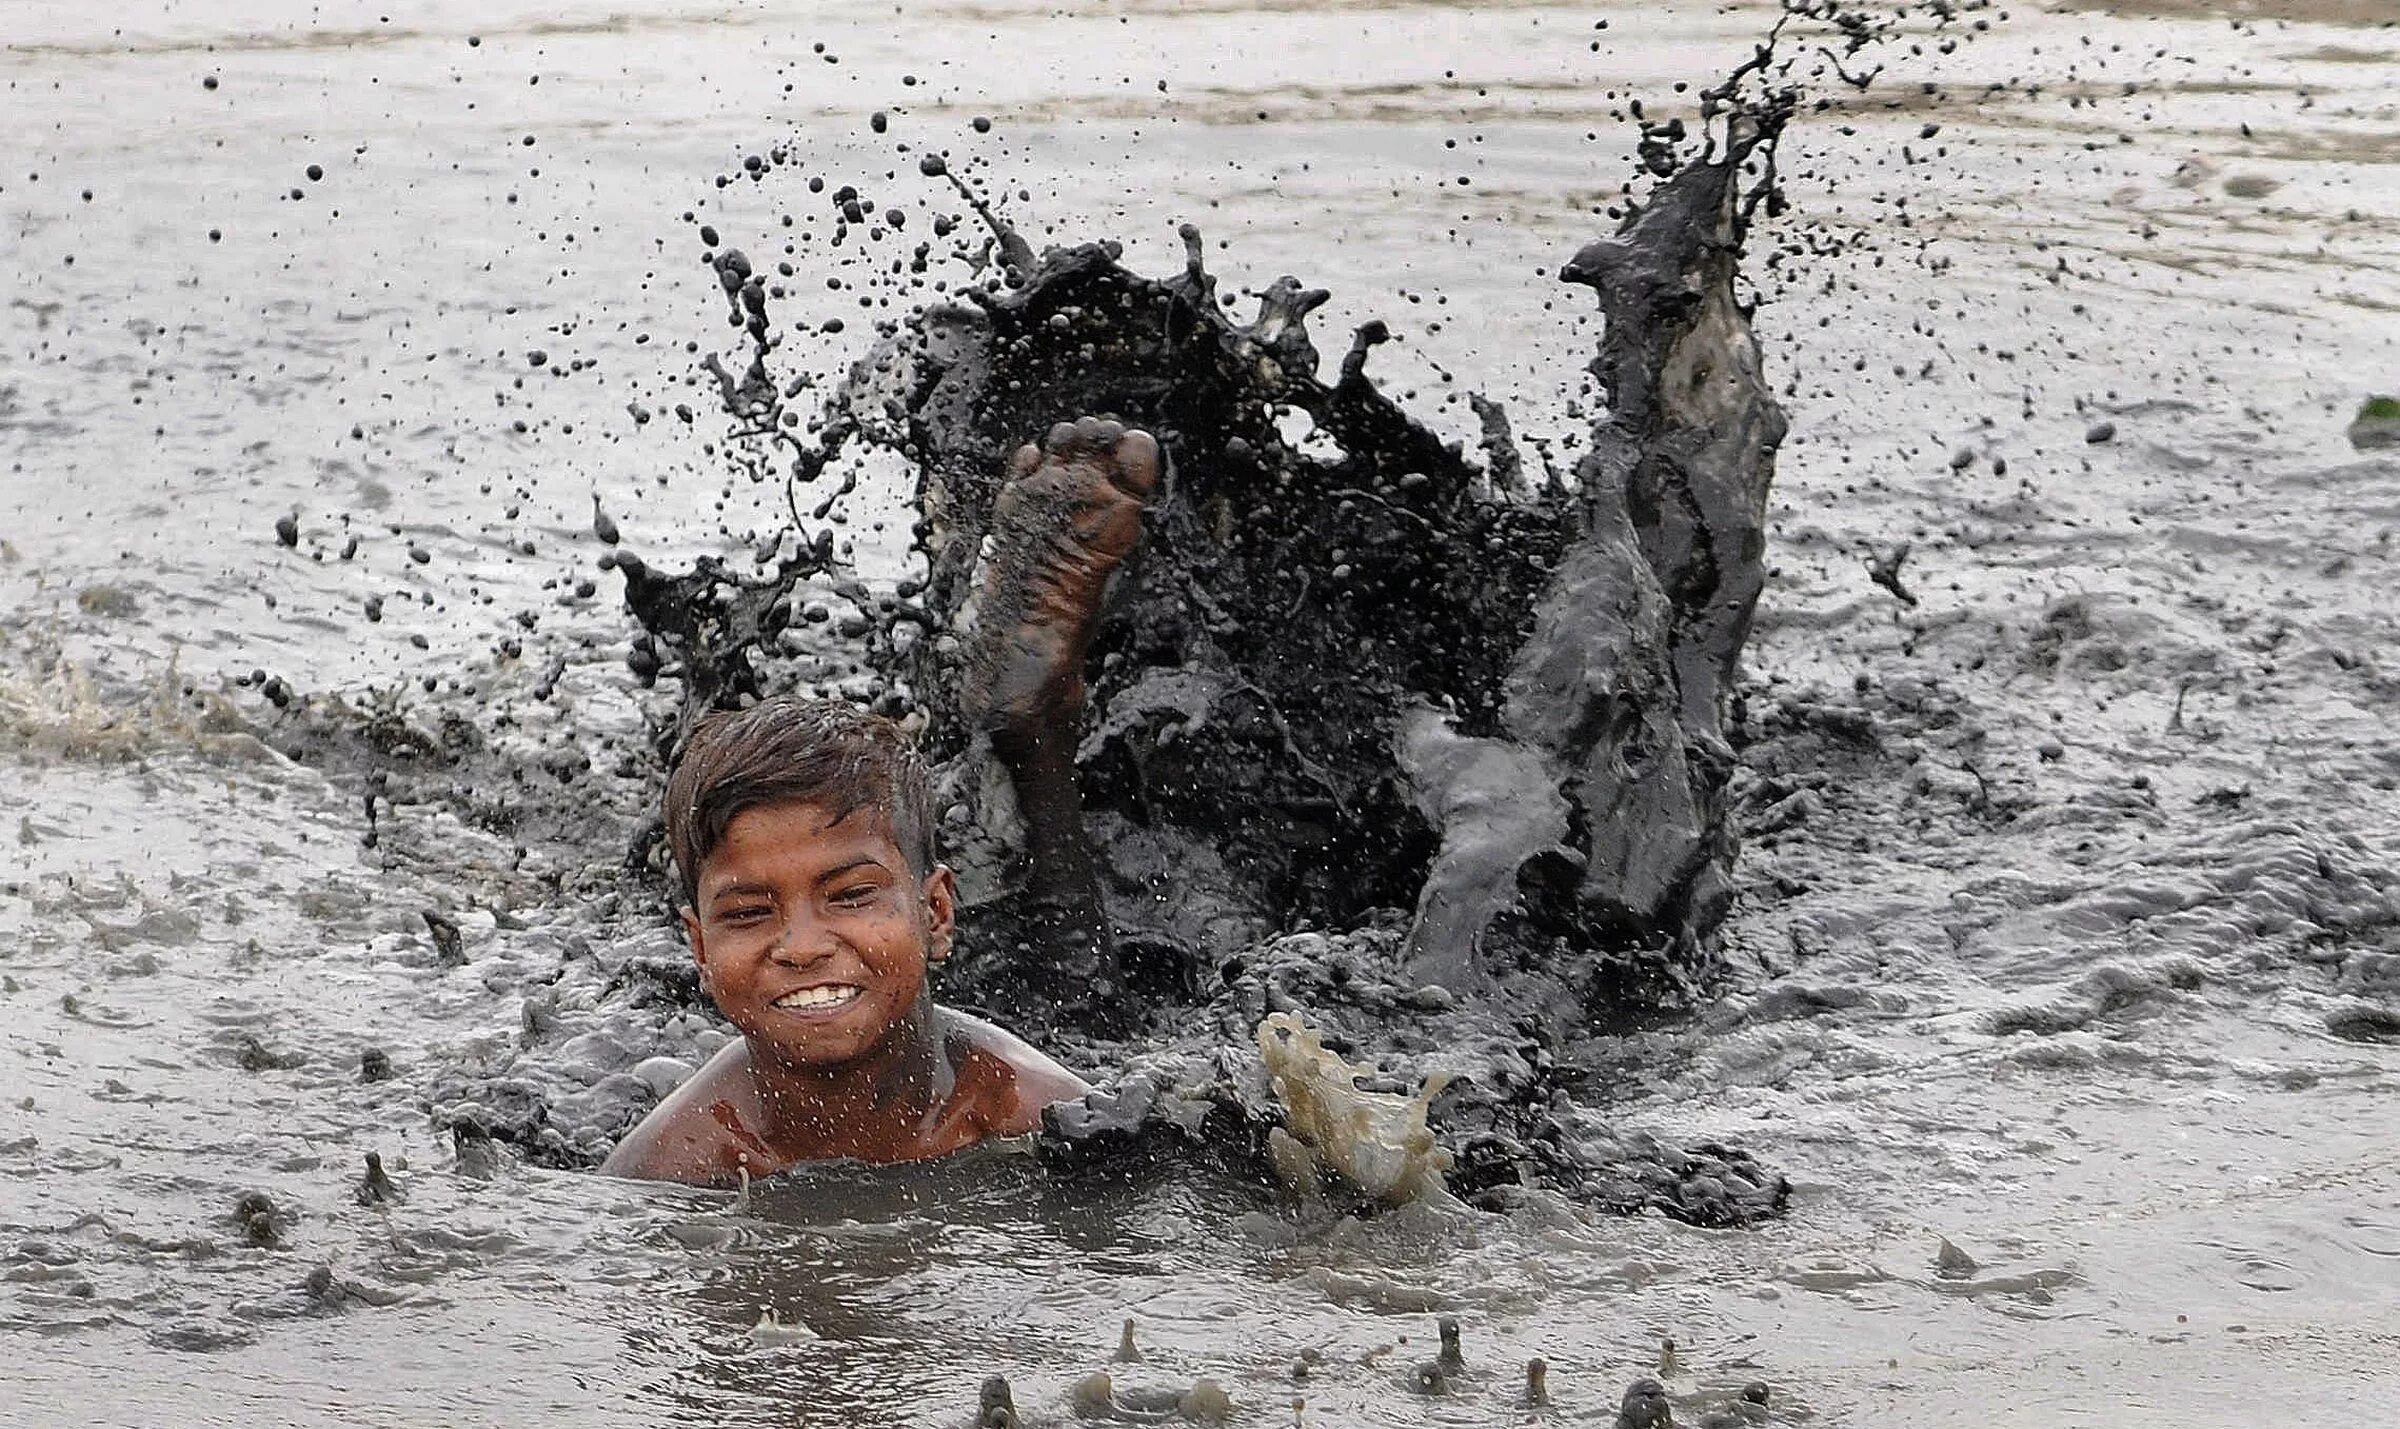 Мальчик купается в грязи. Мальчик в грязной воде.